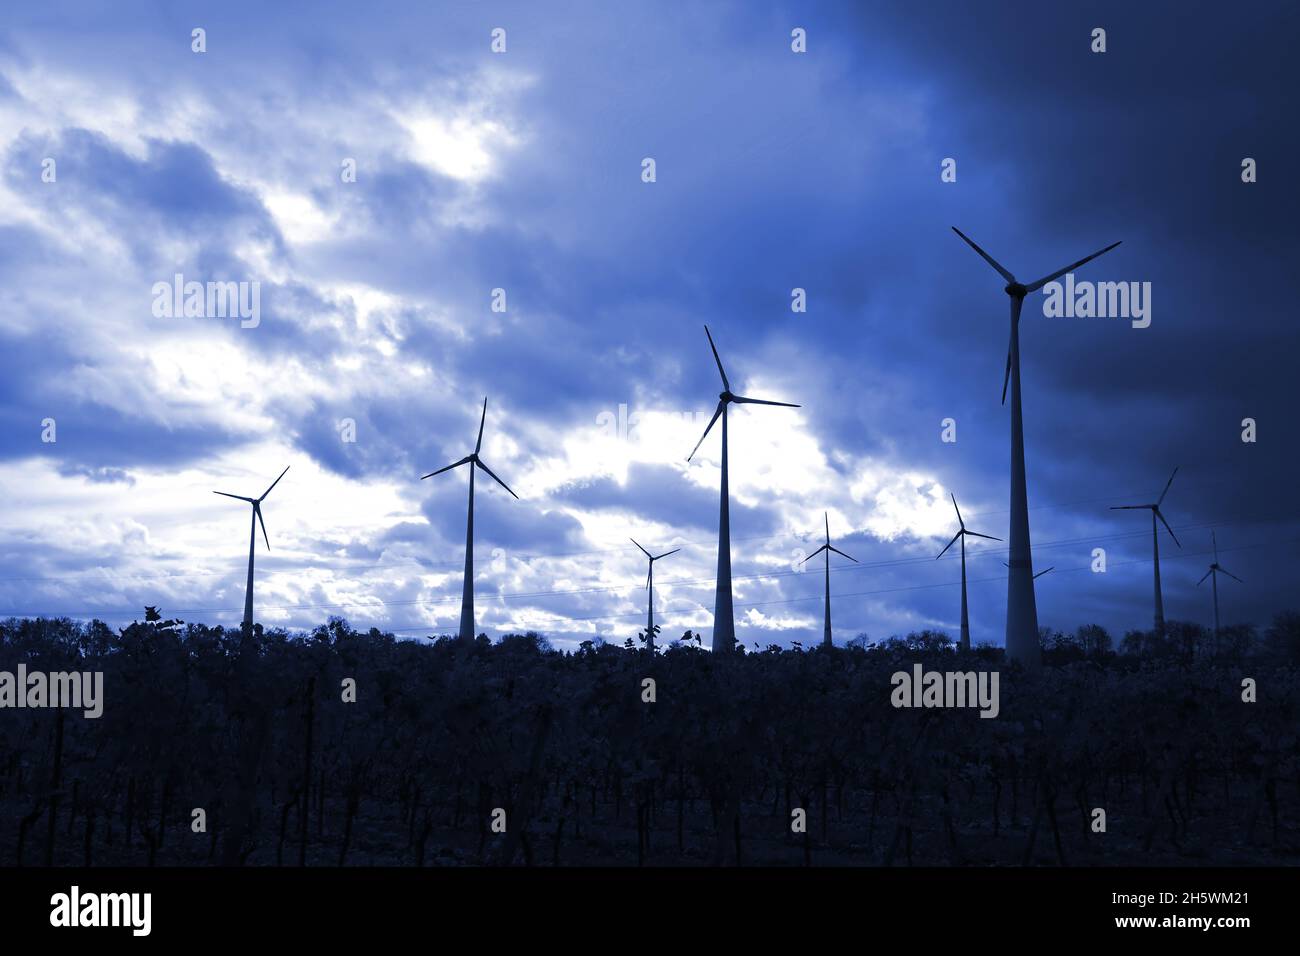 moulins à vent produisant de l'électricité silhoueté dans un ciel bleu foncé Banque D'Images